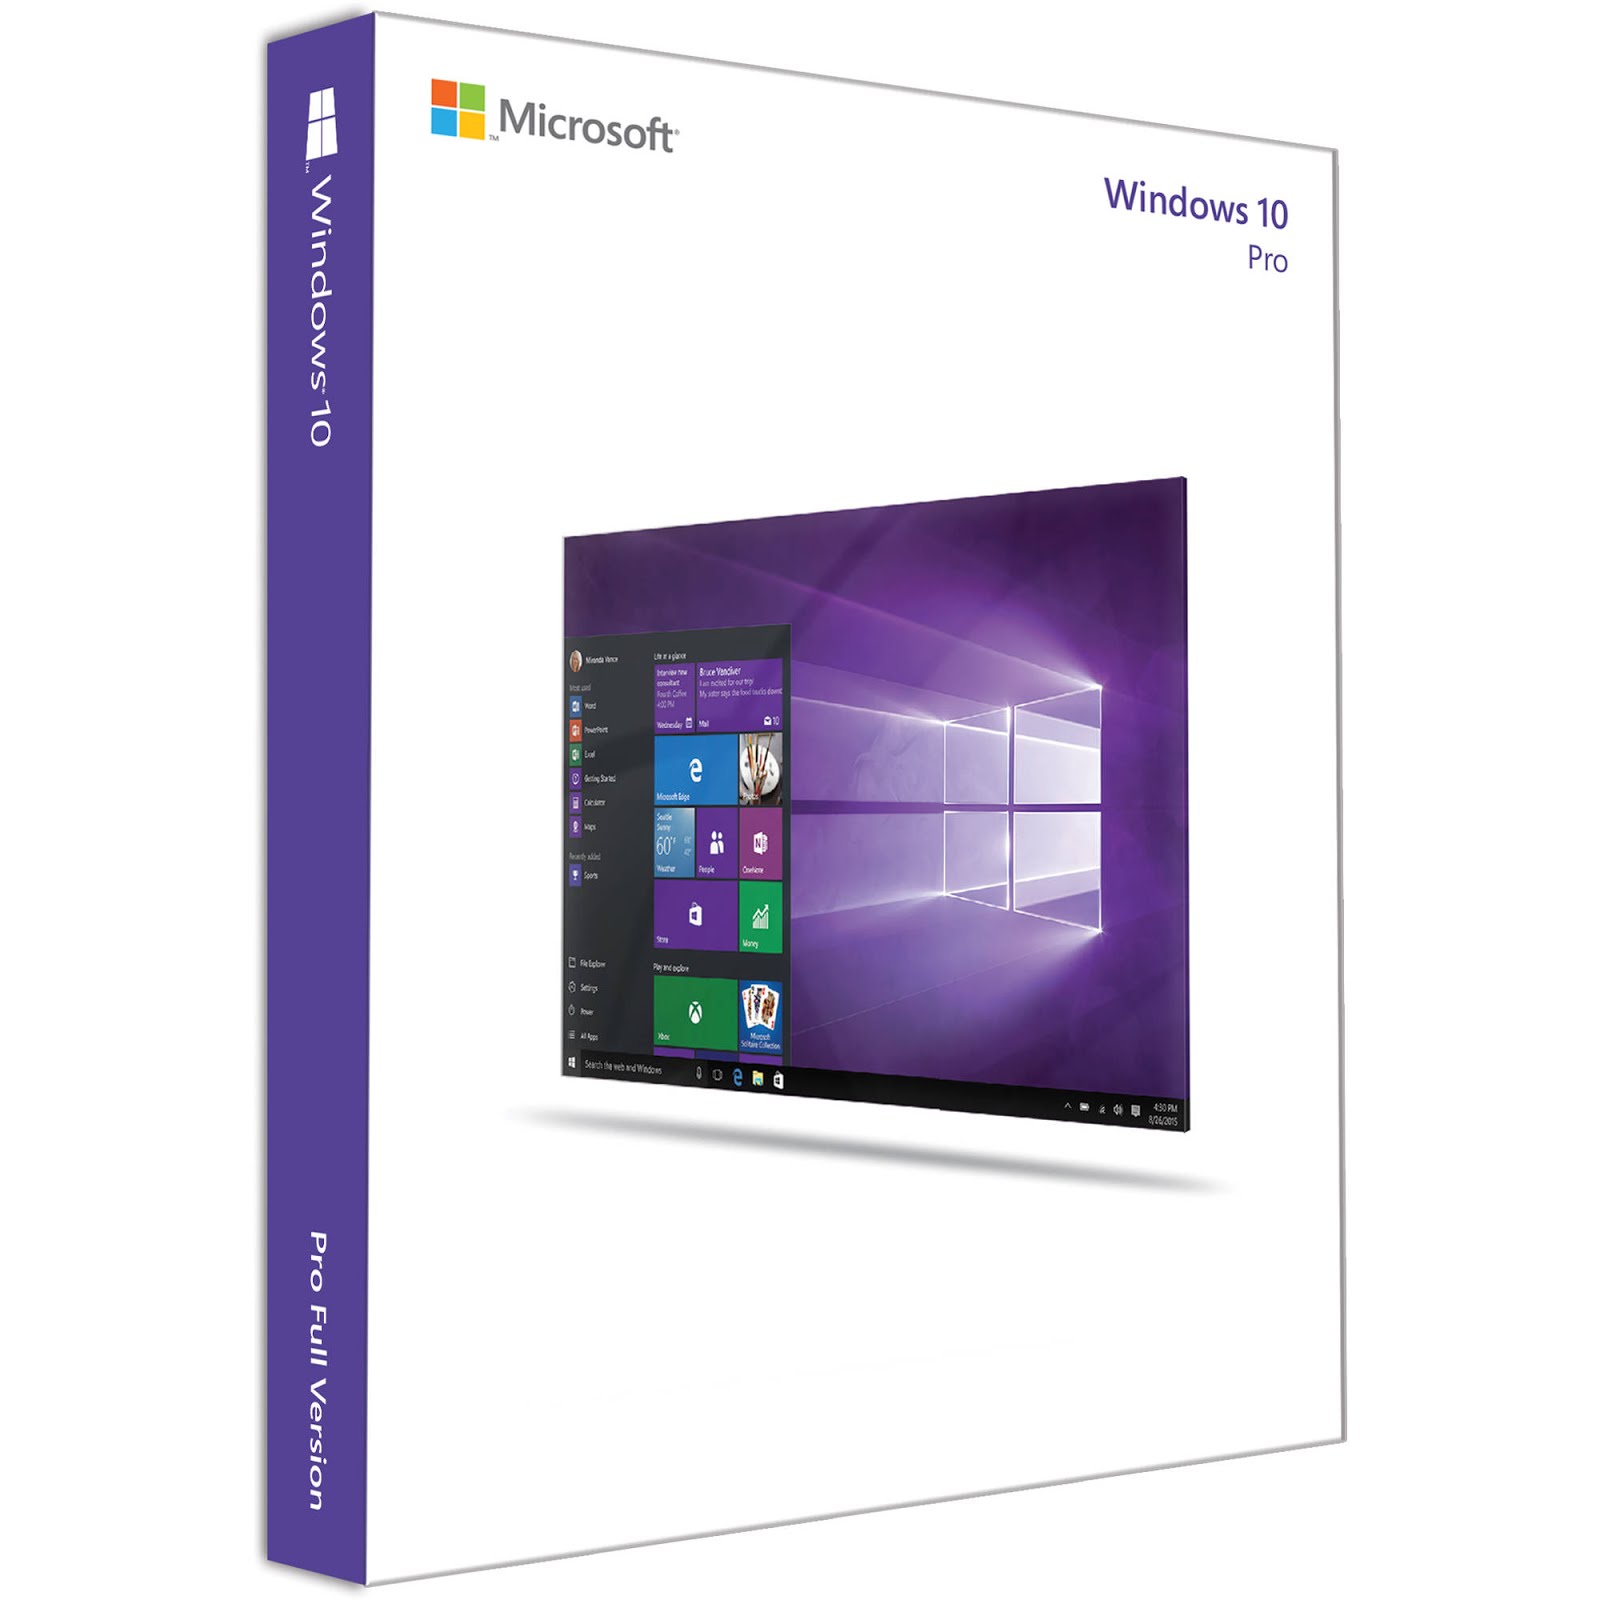 Soft Digital Windows 10 Pro Vl Office16 X64 En Us March 2016 Free